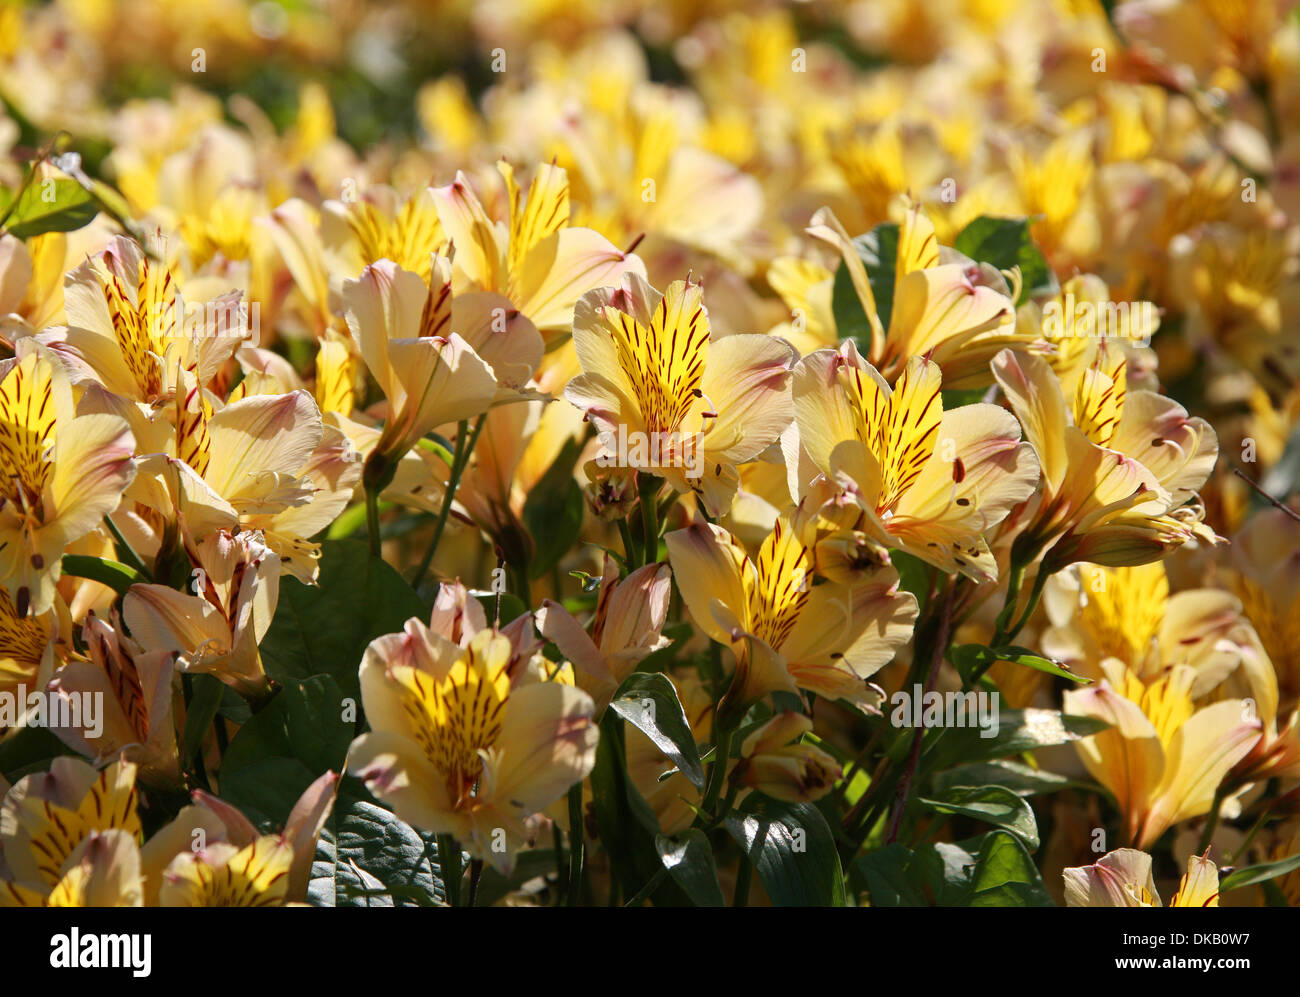 Giglio peruviano o Giglio degli Incas, Alstroemeria "amicizia", Alstroemeriaceae. Foto Stock